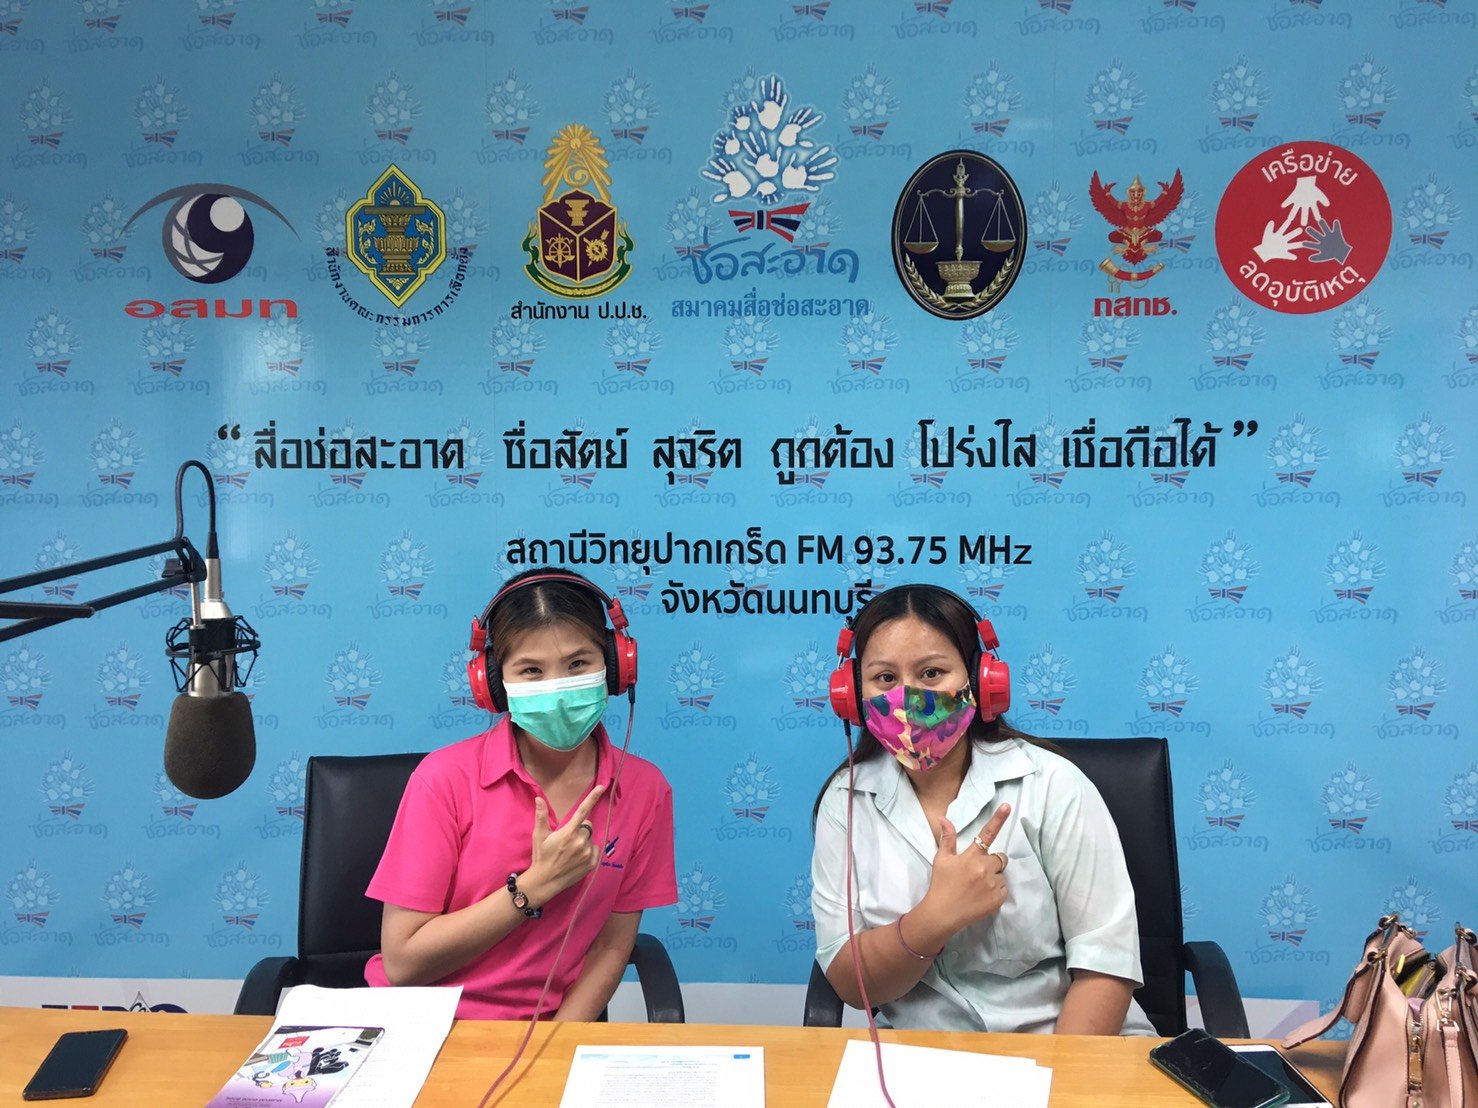 รายการ “คนไทยไม่ทนต่อการทุจริต” วันเสาร์ที่ 16 ตุลาคม 2564 เวลา 18.00-18.30 น.